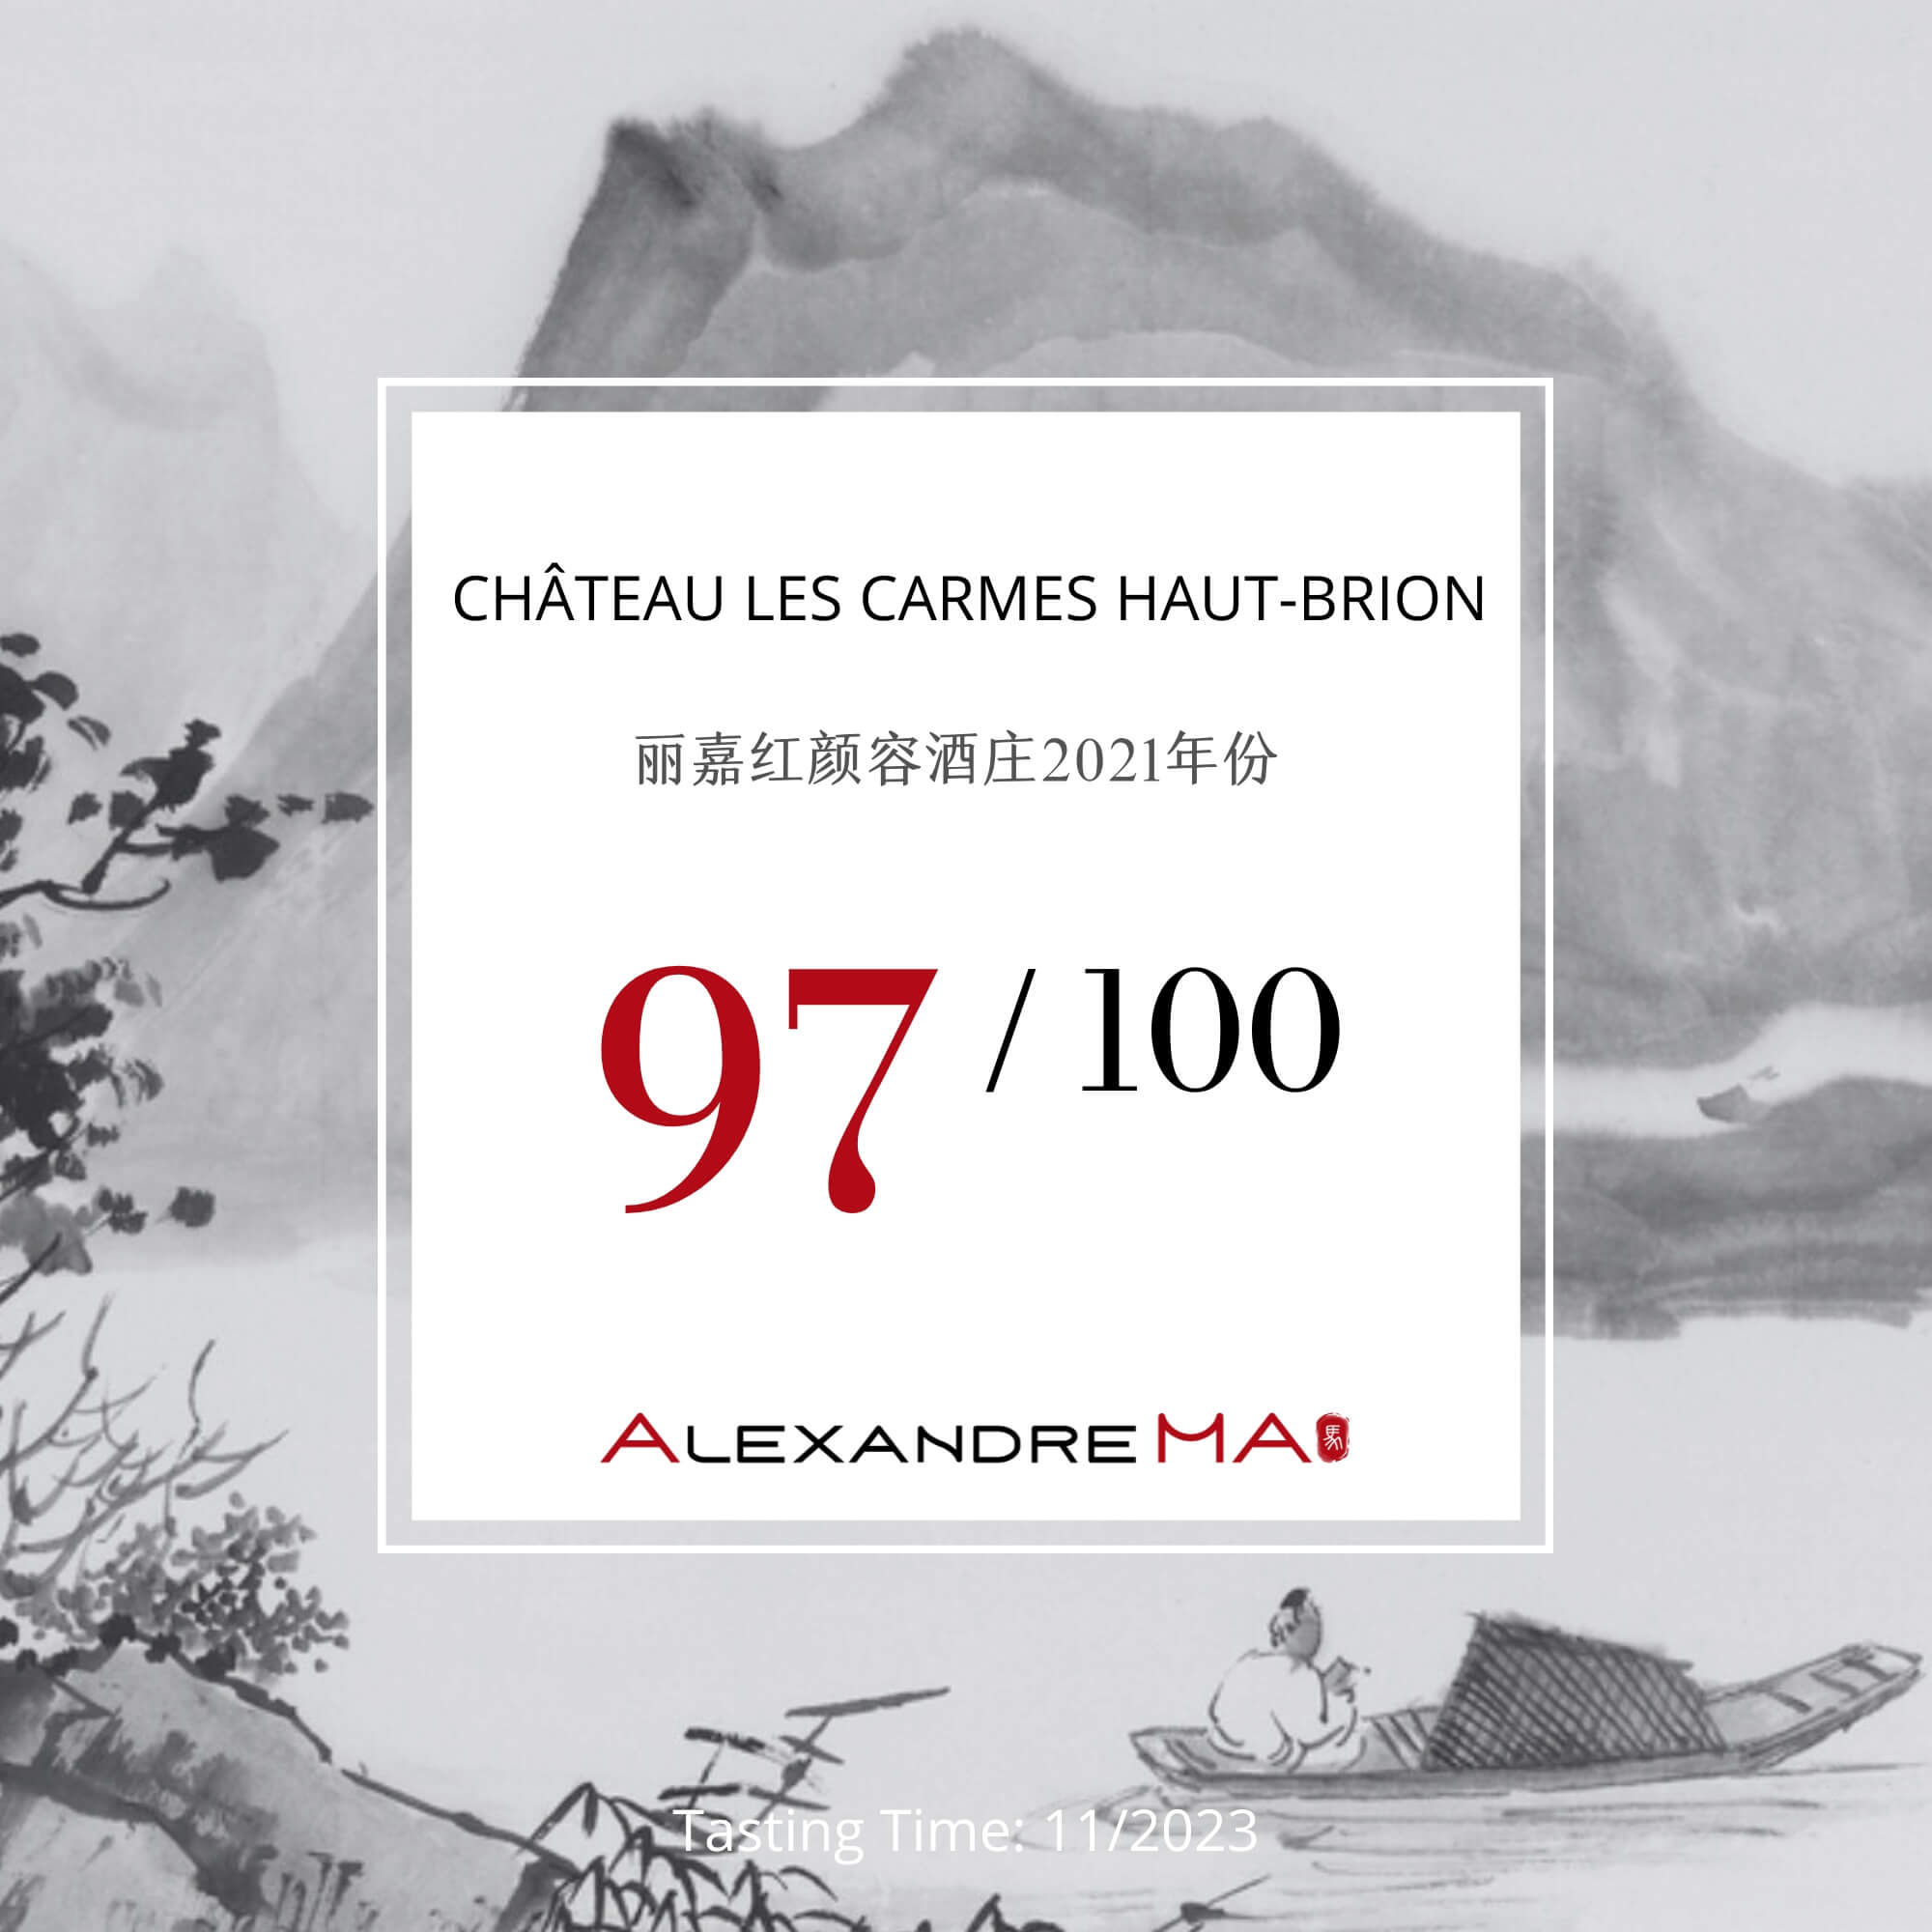 Château Les Carmes Haut-Brion 2021 - Alexandre MA